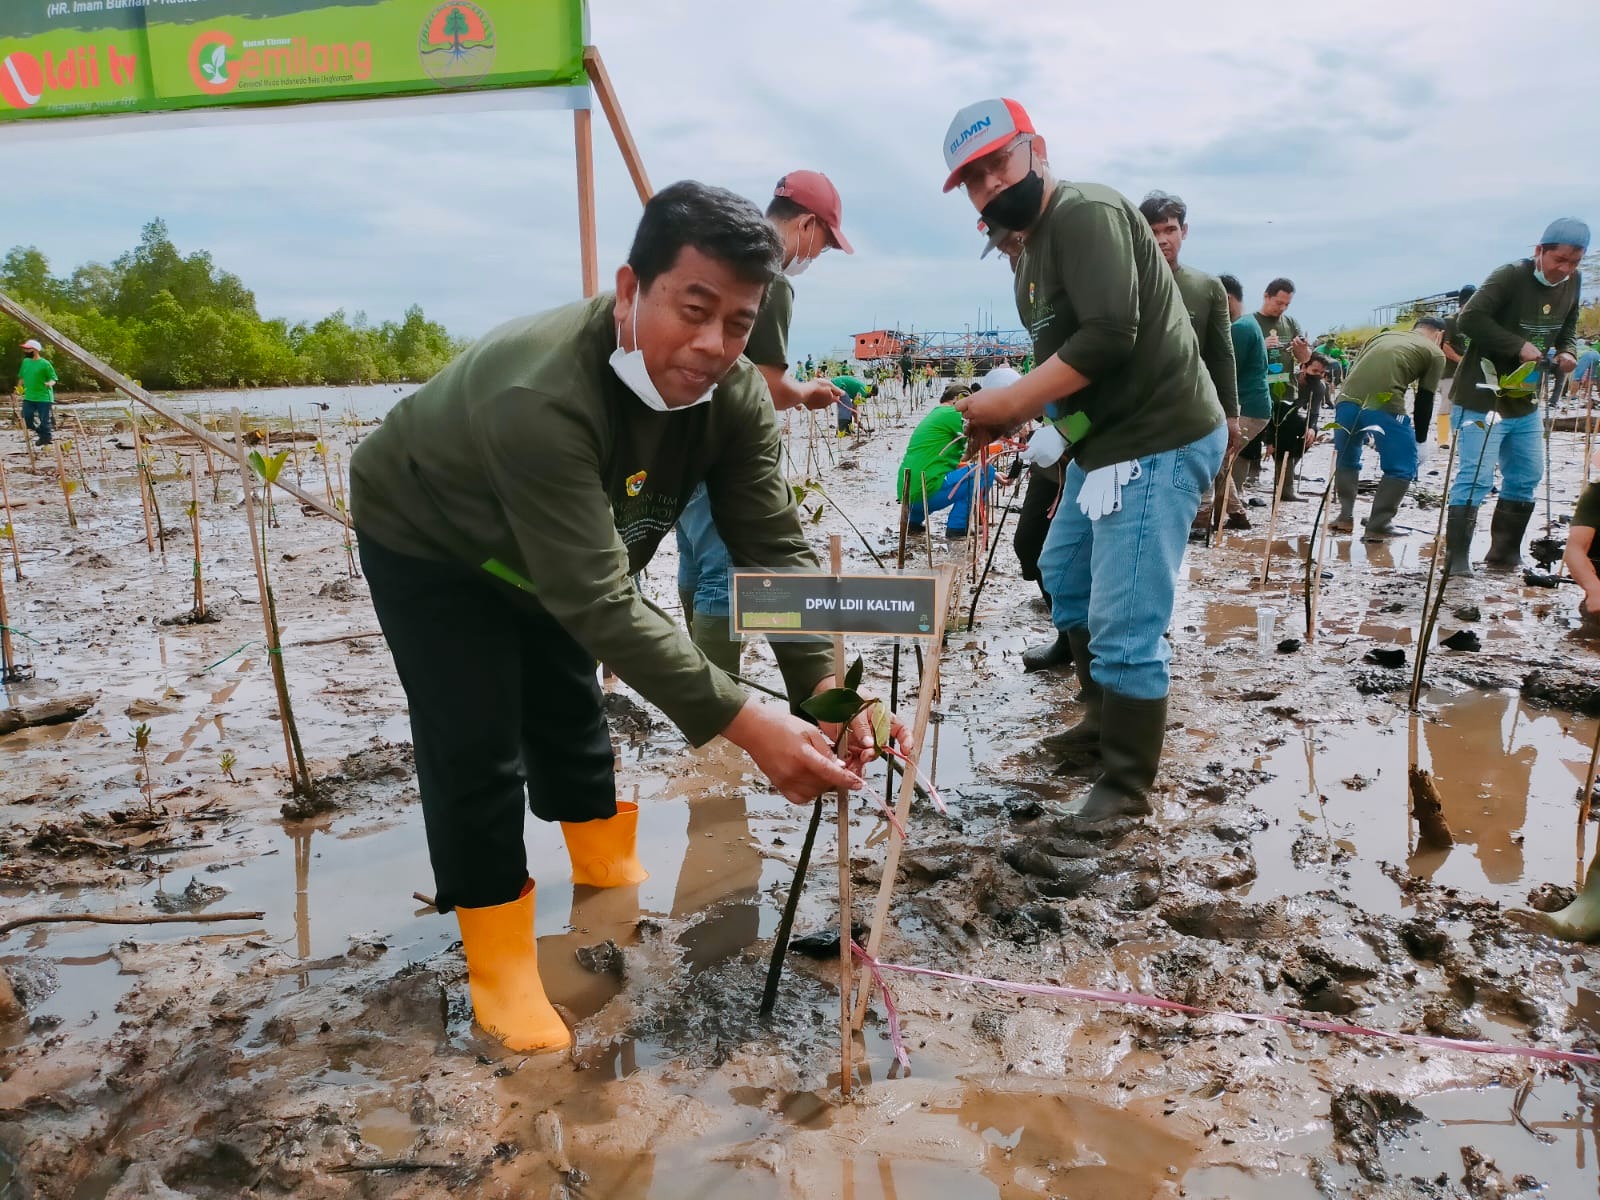 LDII Dorong Perubahan dan Kesadaran Lingkungan dalam Peringatan Hari Lingkungan Hidup Indonesia